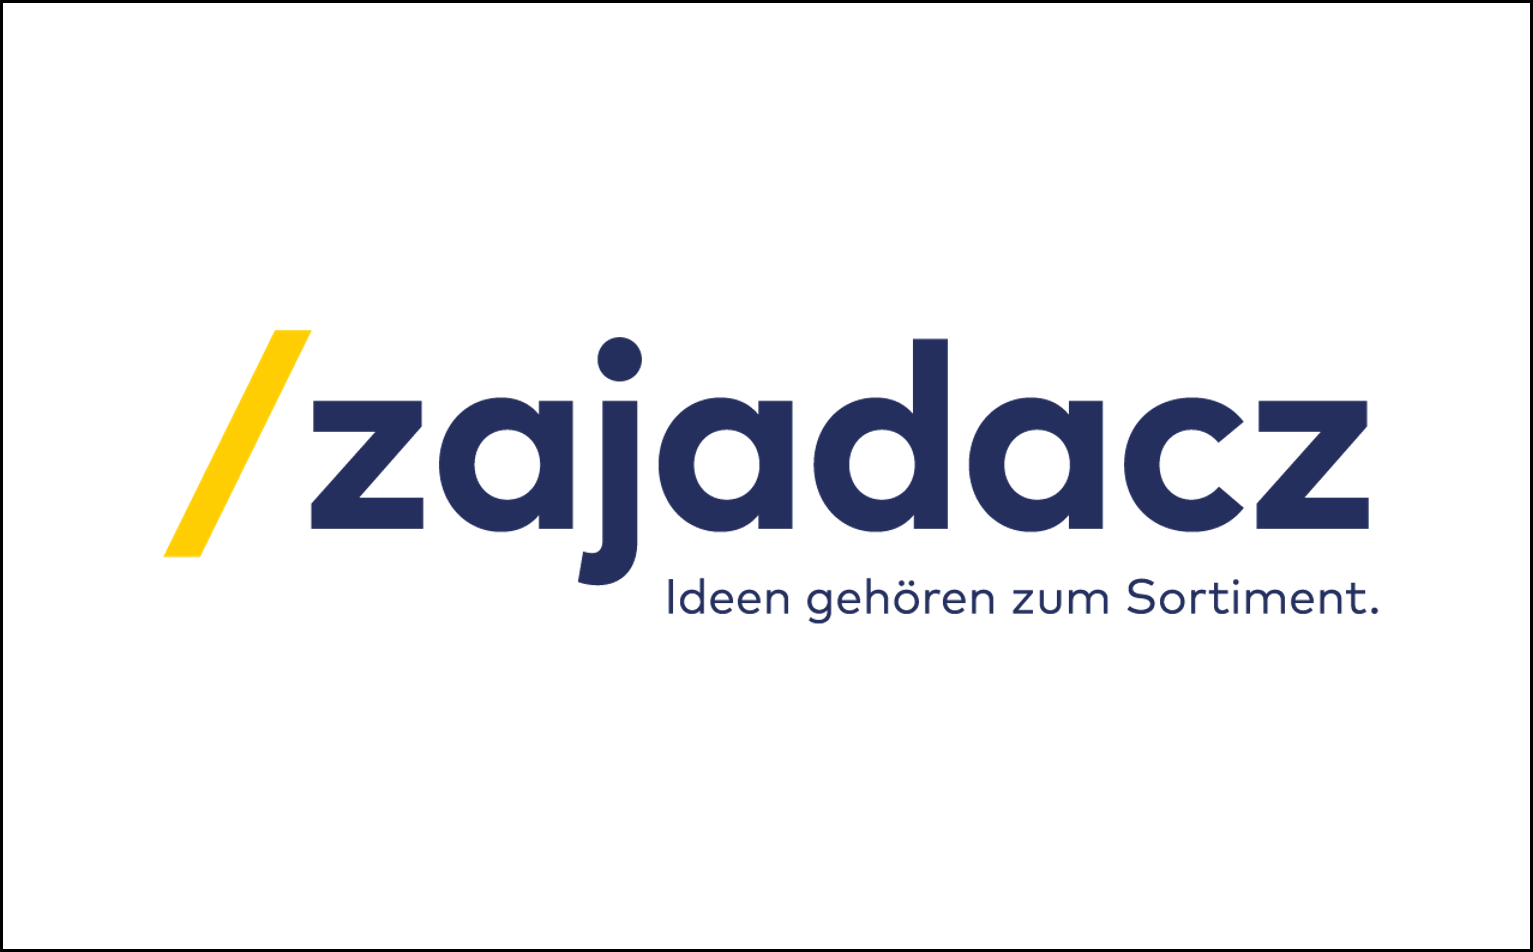 FRIEDERBARTH Zajadacz Logo